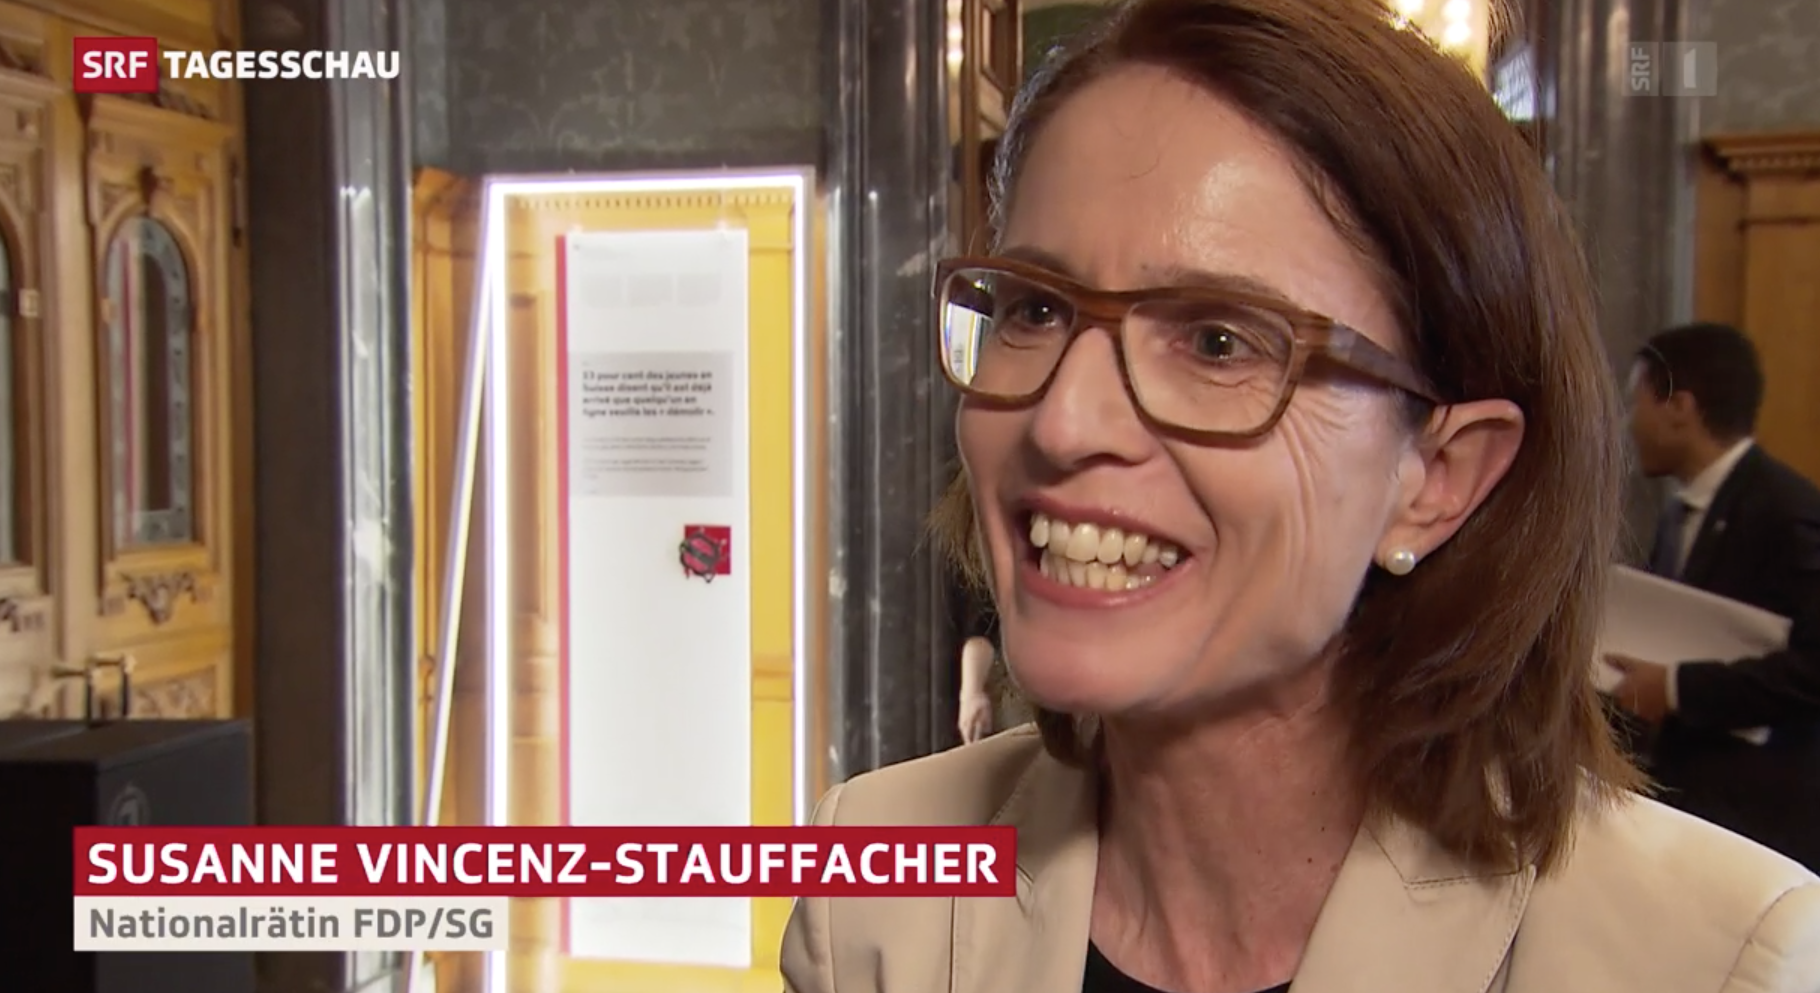 Susanne Vincenz-Stauffacher in der Tagesschau vom 19.12.2019